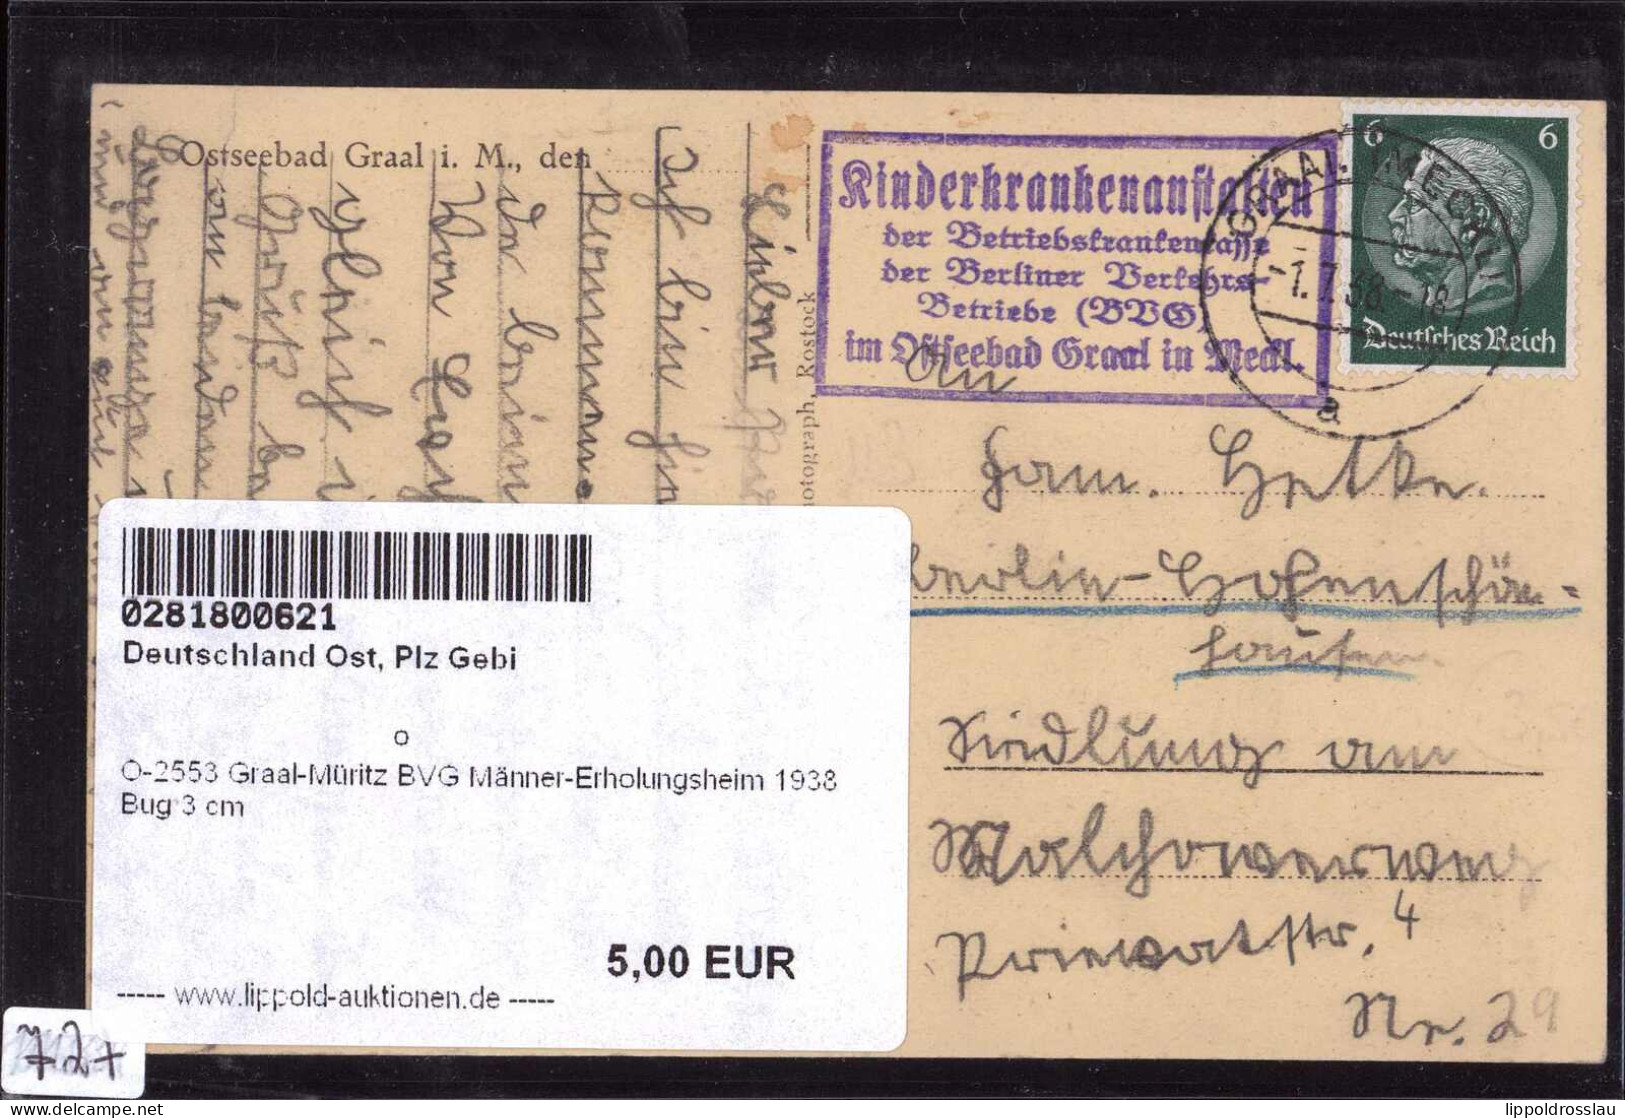 Gest. O-2553 Graal-Müritz BVG Männer-Erholungsheim 1938 Bug 3 Cm - Rostock